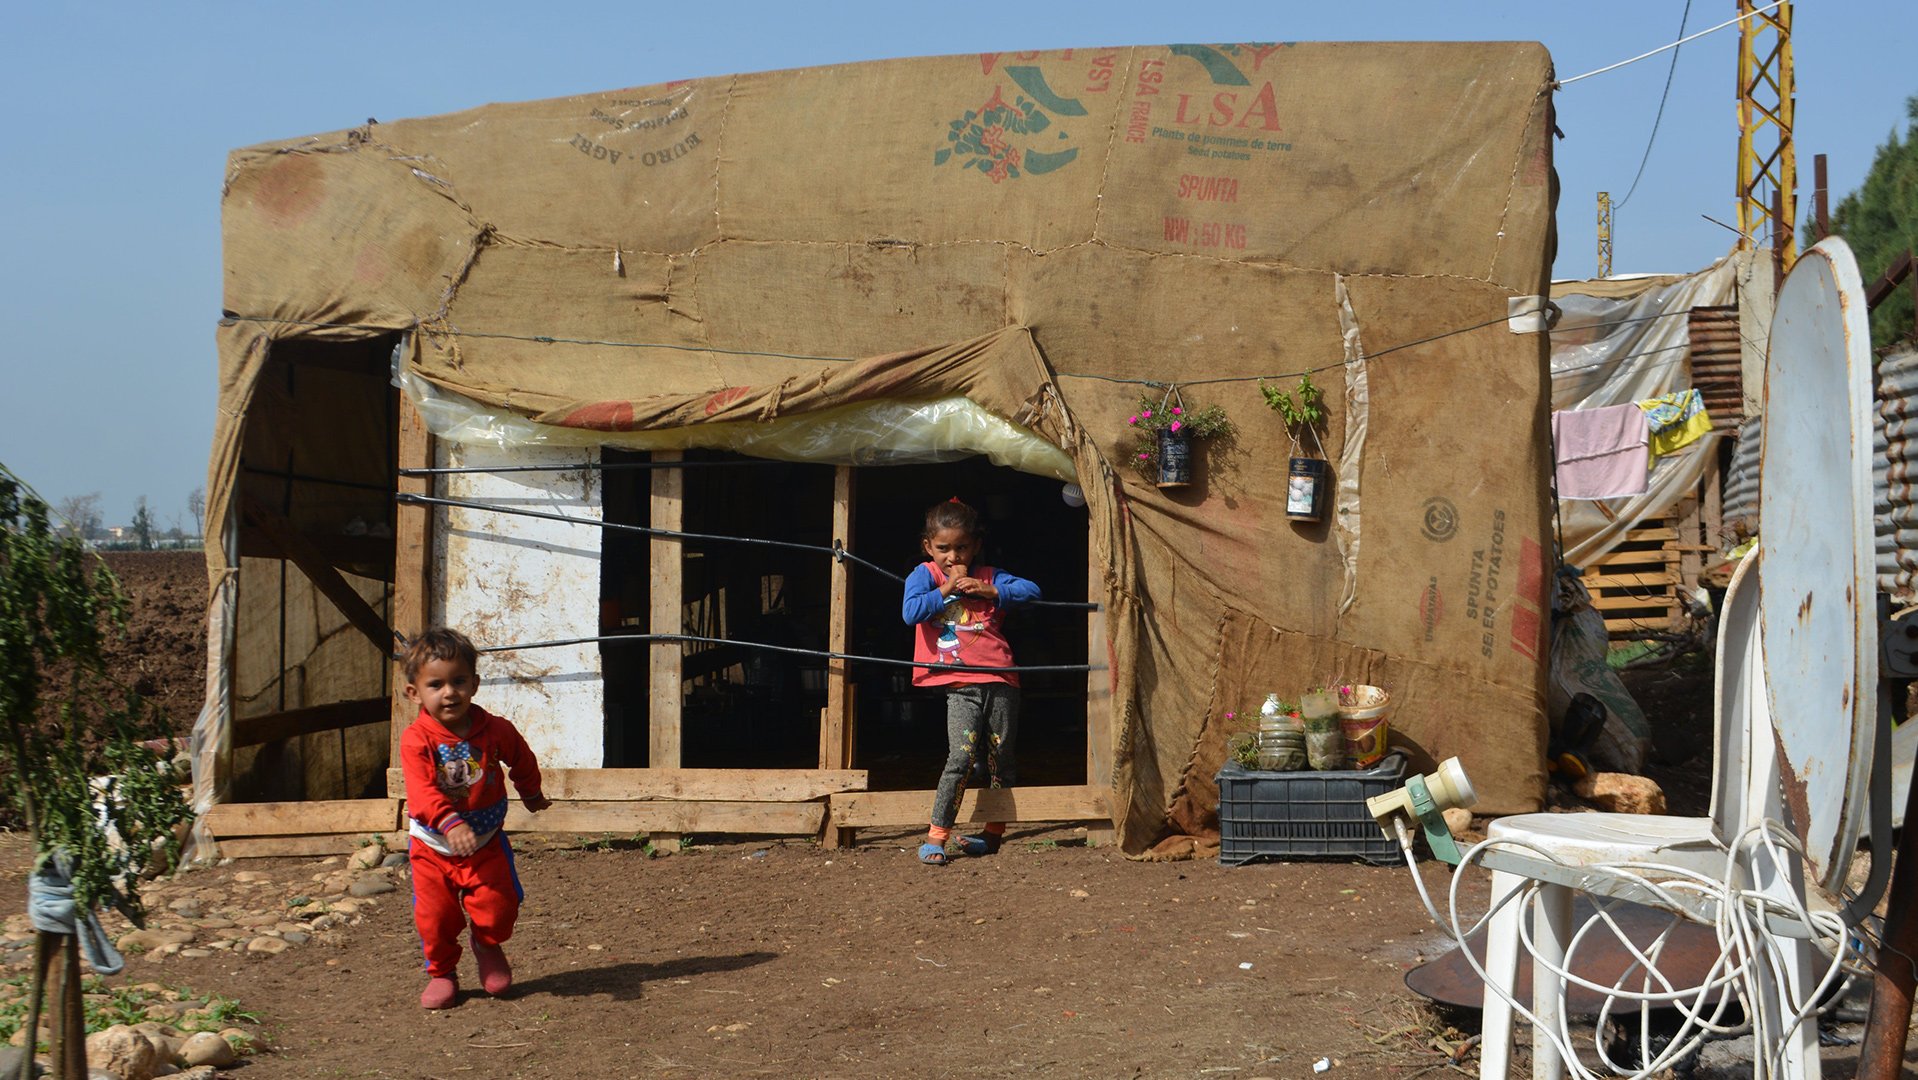 Alia, broertje en zusje in Libanon gevlucht uit Syrië_War Child